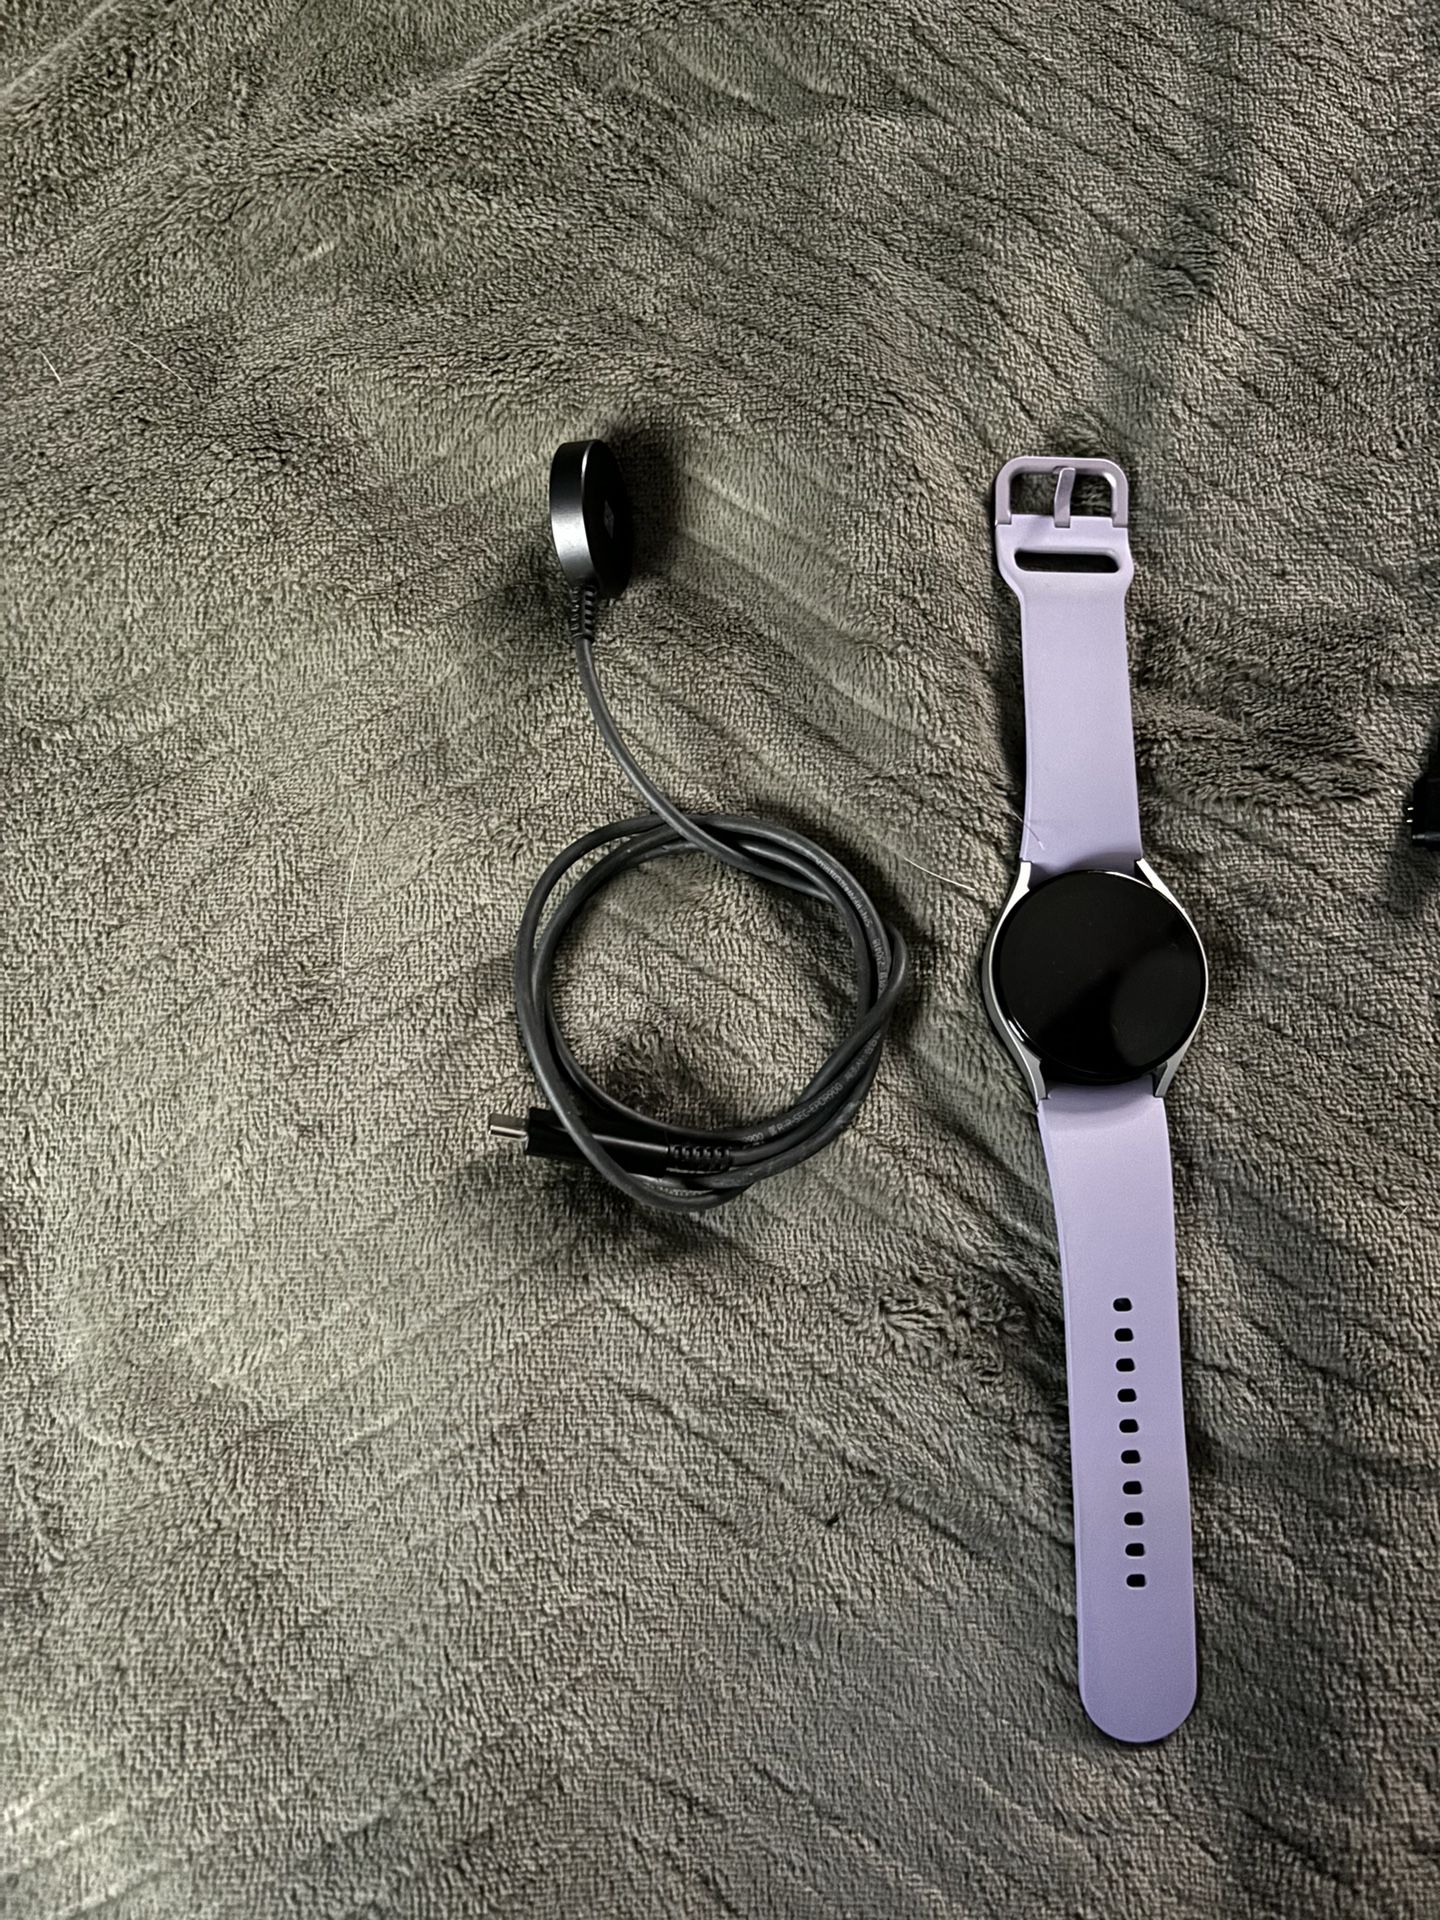 Samsung Smart Watch